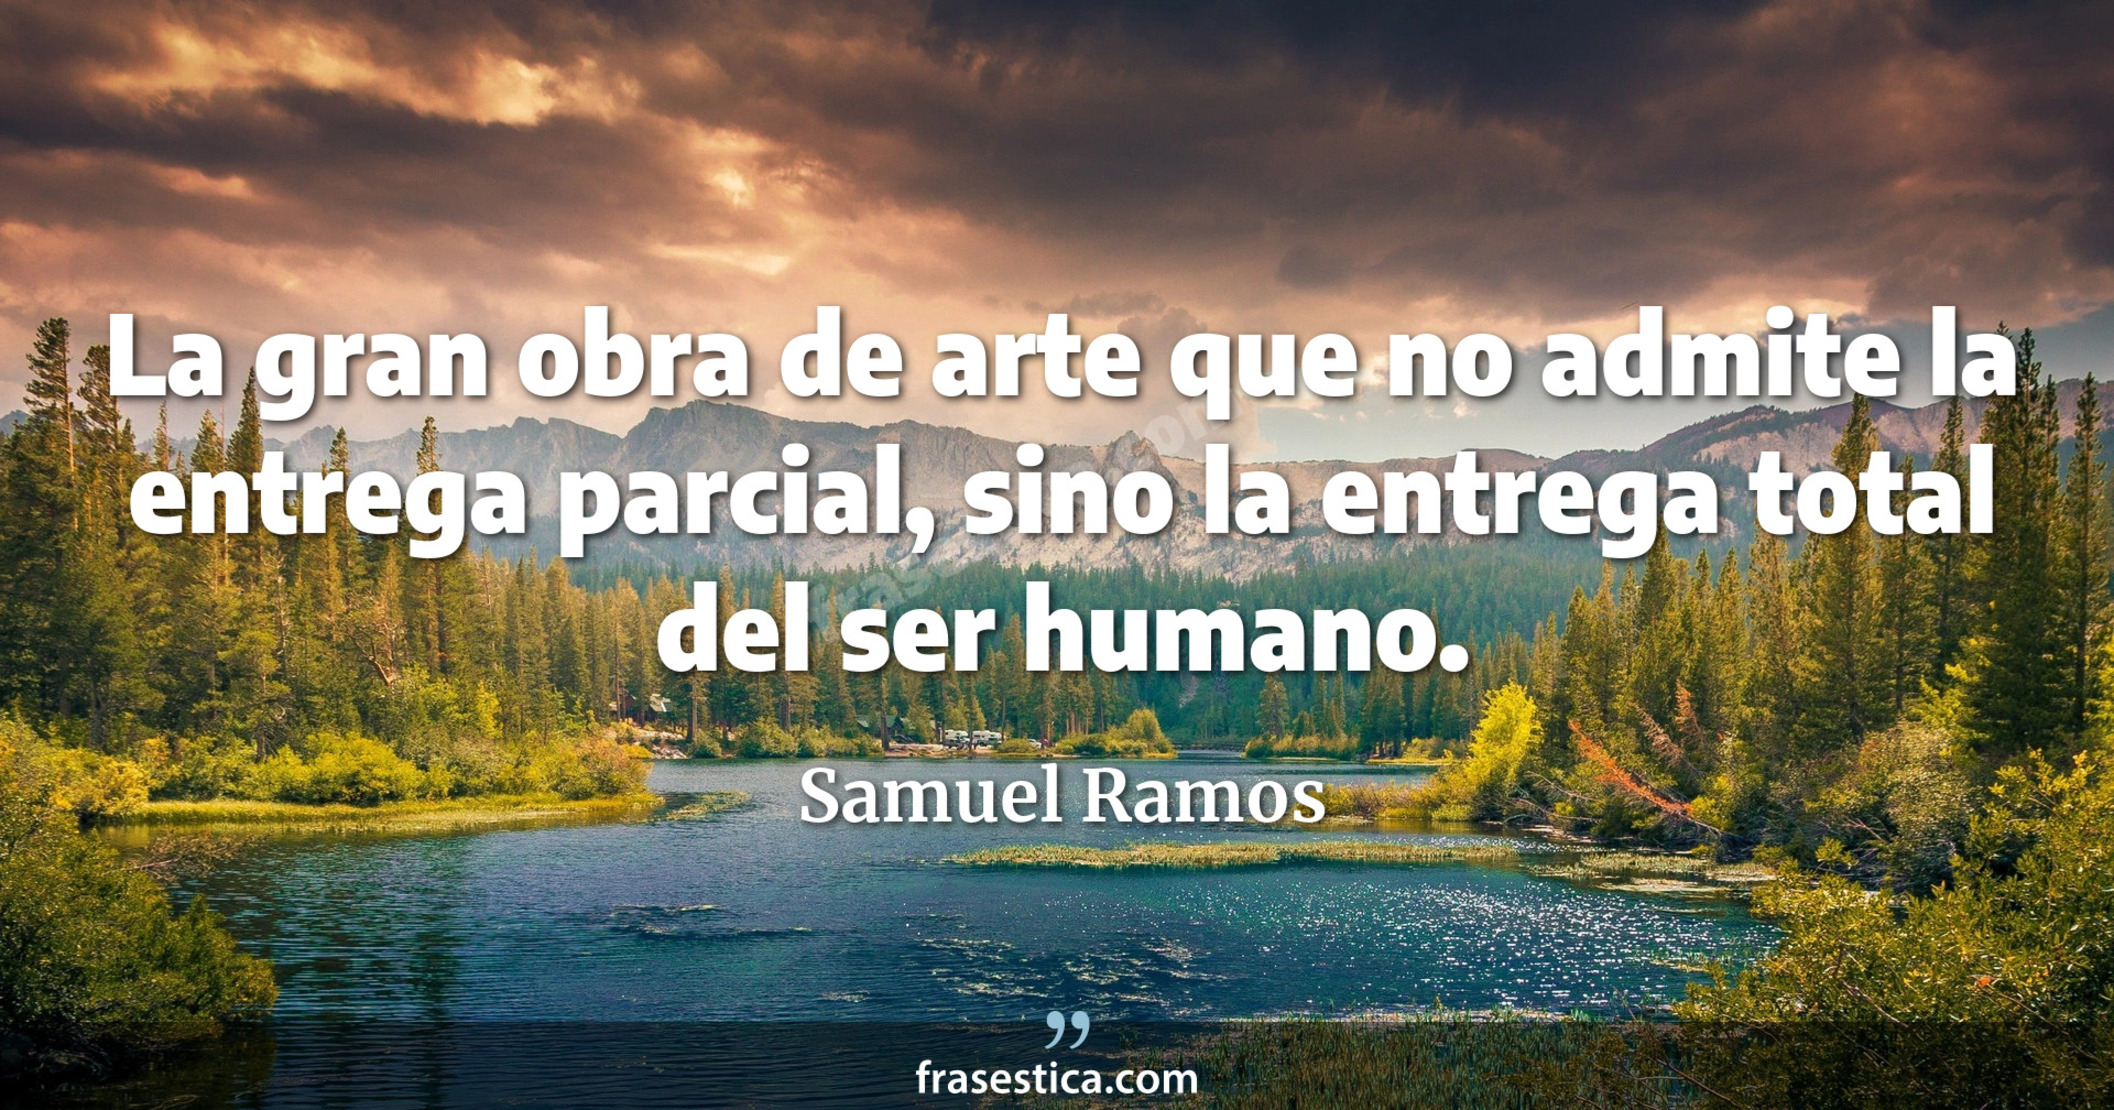 La gran obra de arte que no admite la entrega parcial, sino la entrega total del ser humano. - Samuel Ramos